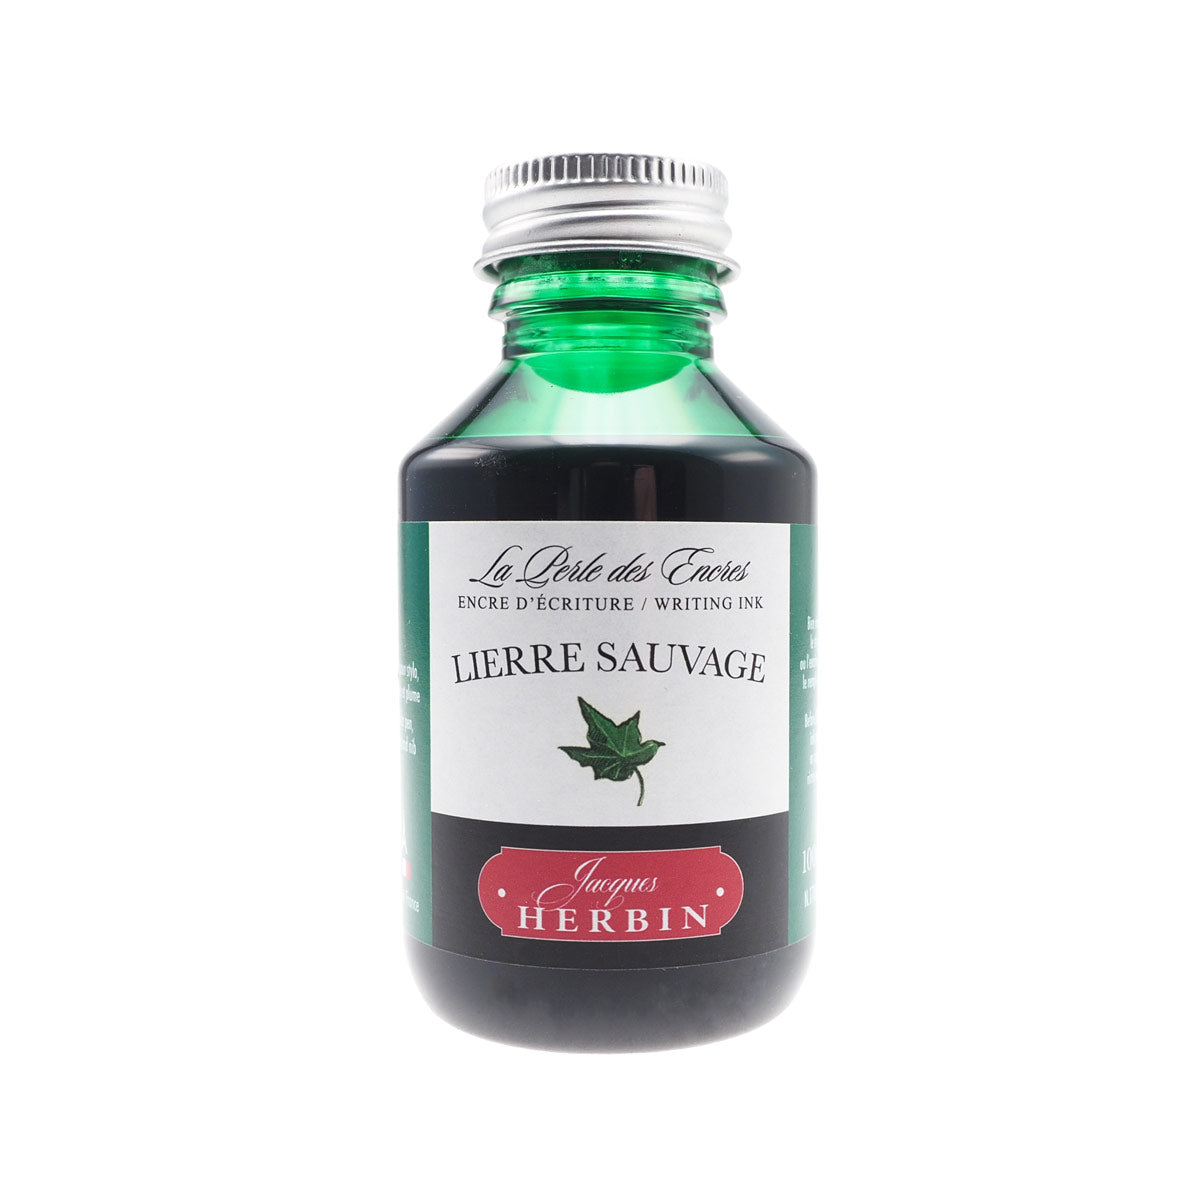 Herbin - Lierre sauvage (efeugrün), 100 ml